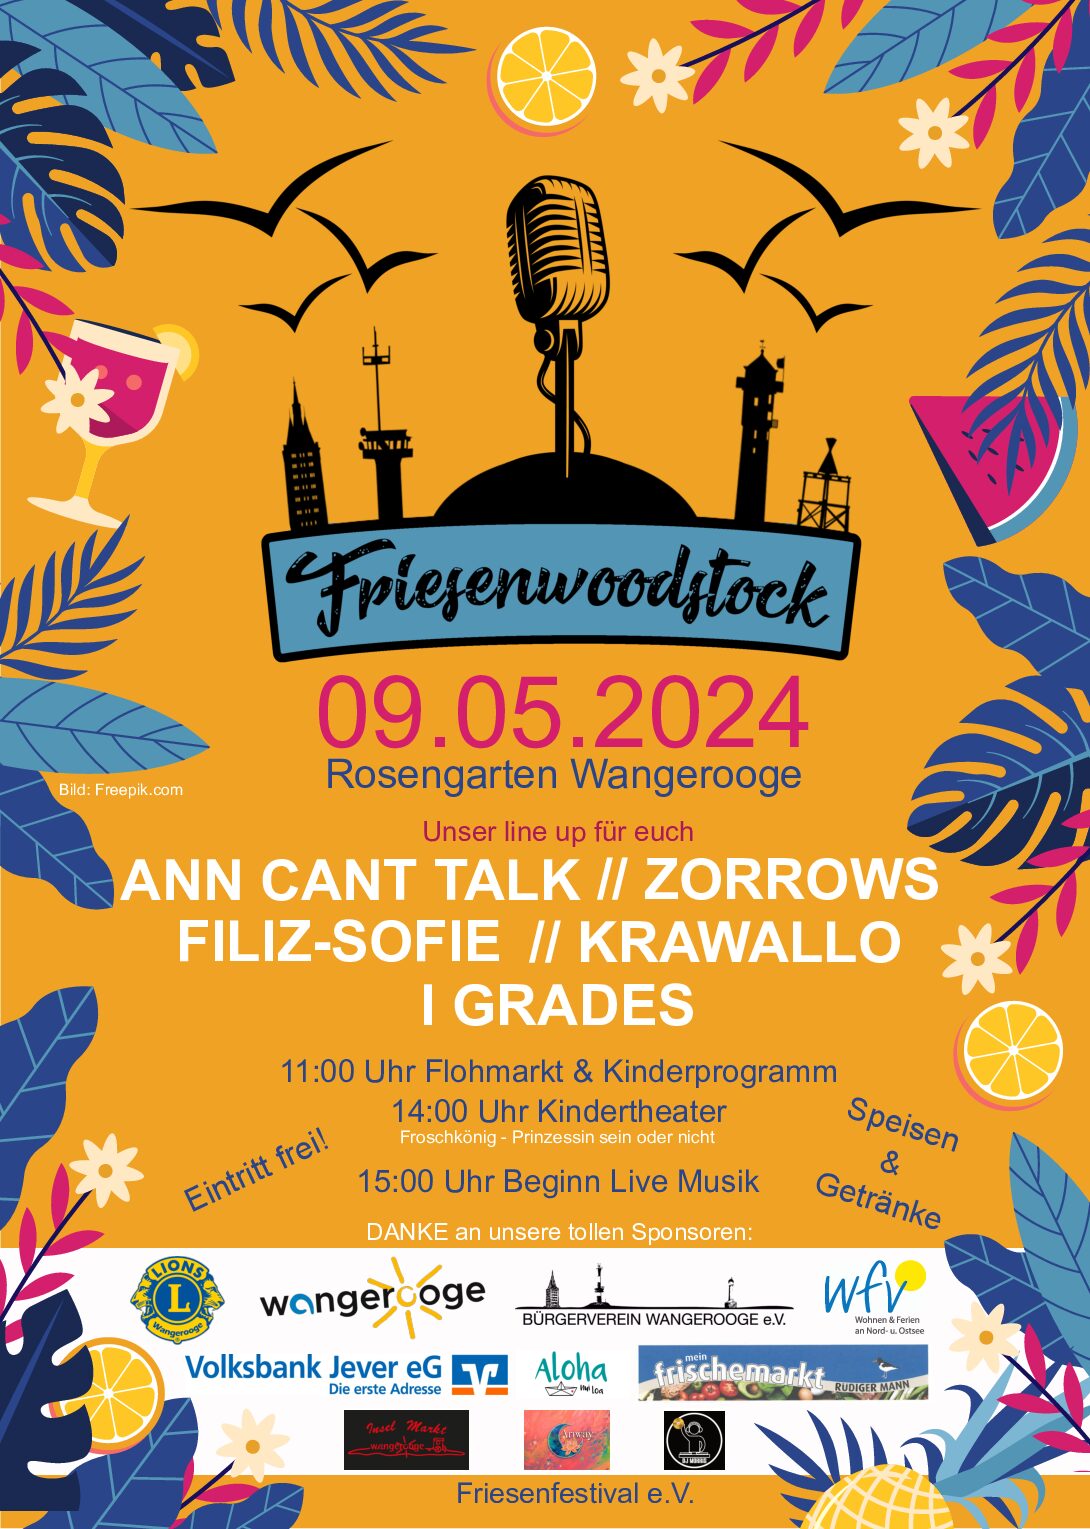 01.05.2024 “Friesenwoodstock” im Rosengarten 09.05.2024